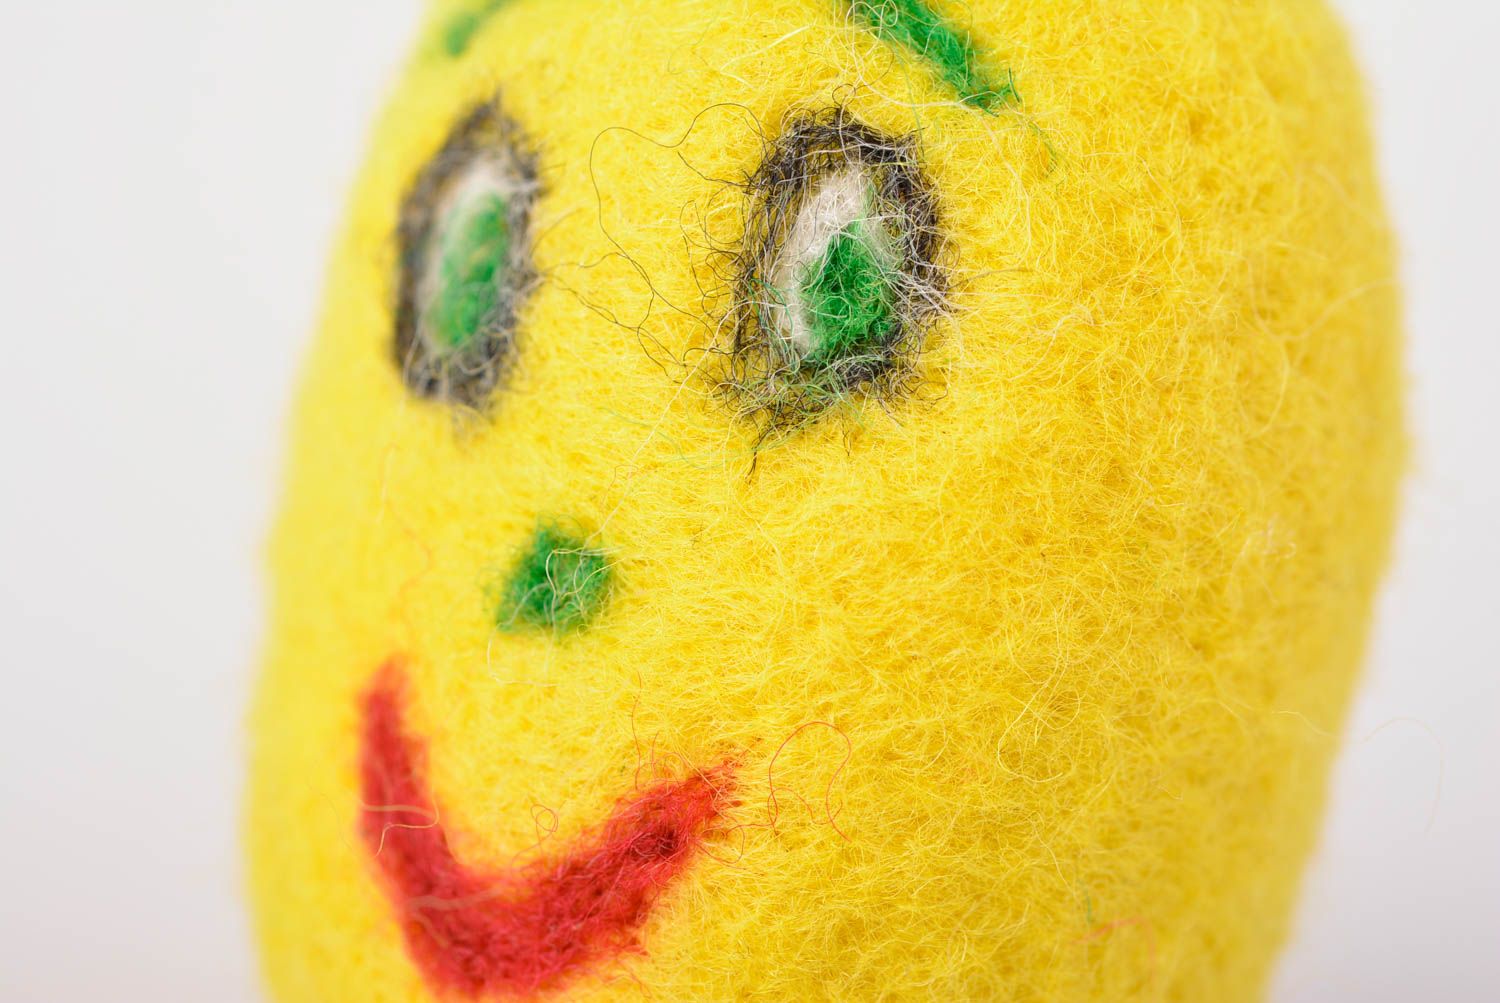 Мягкая игрушка ручной работы валяная игрушка лимон желтый игрушка из шерсти фото 3